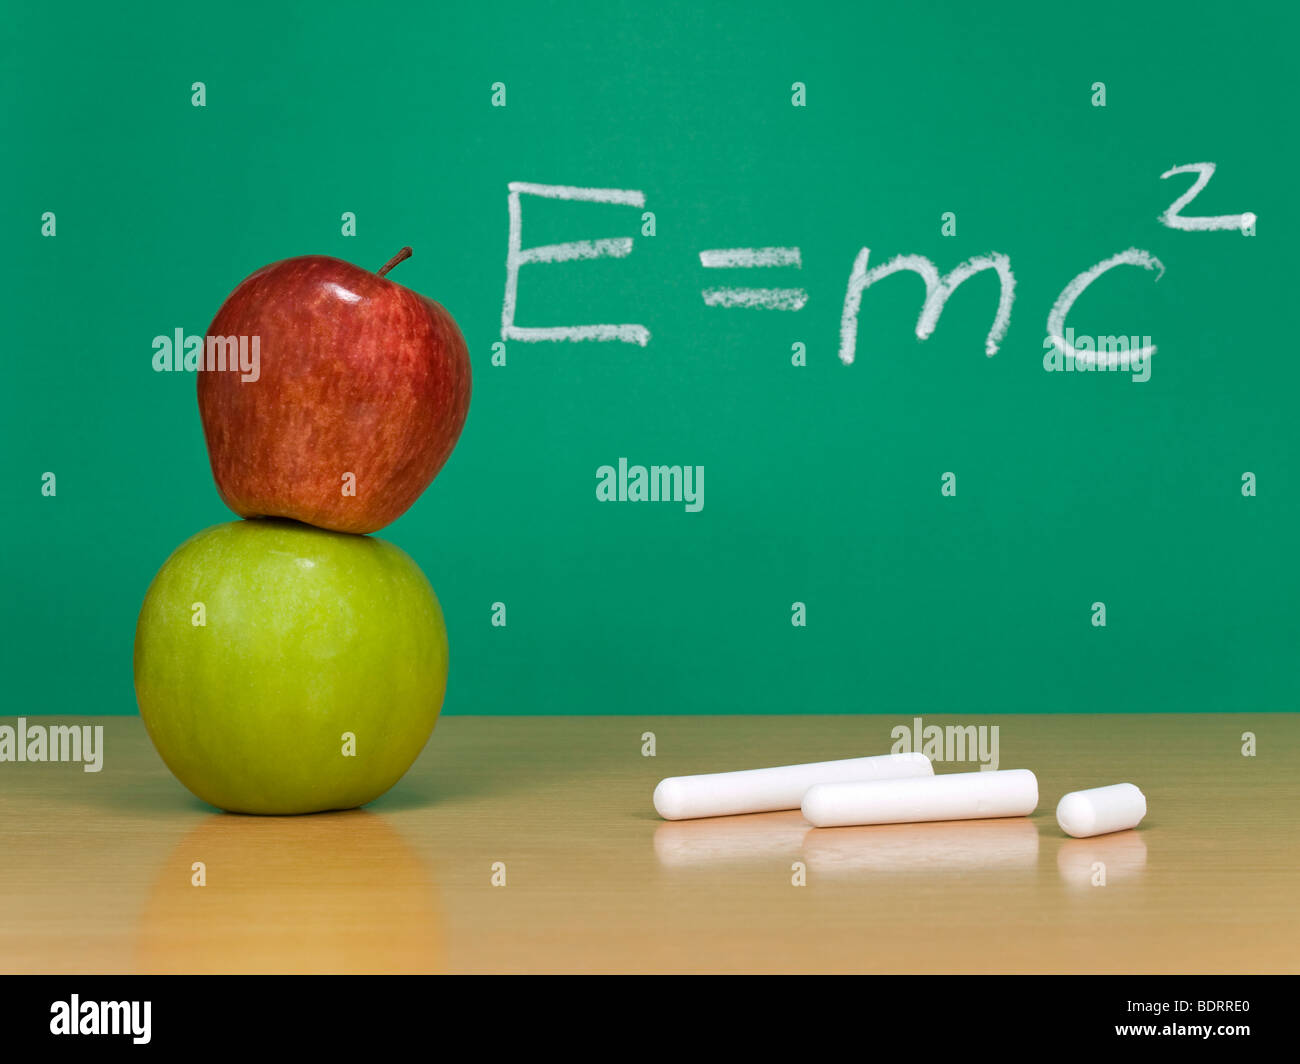 Einsteins Formel der Relativitätstheorie auf einer Kreidetafel. Einige Kreiden und Äpfel im Vordergrund. Stockfoto